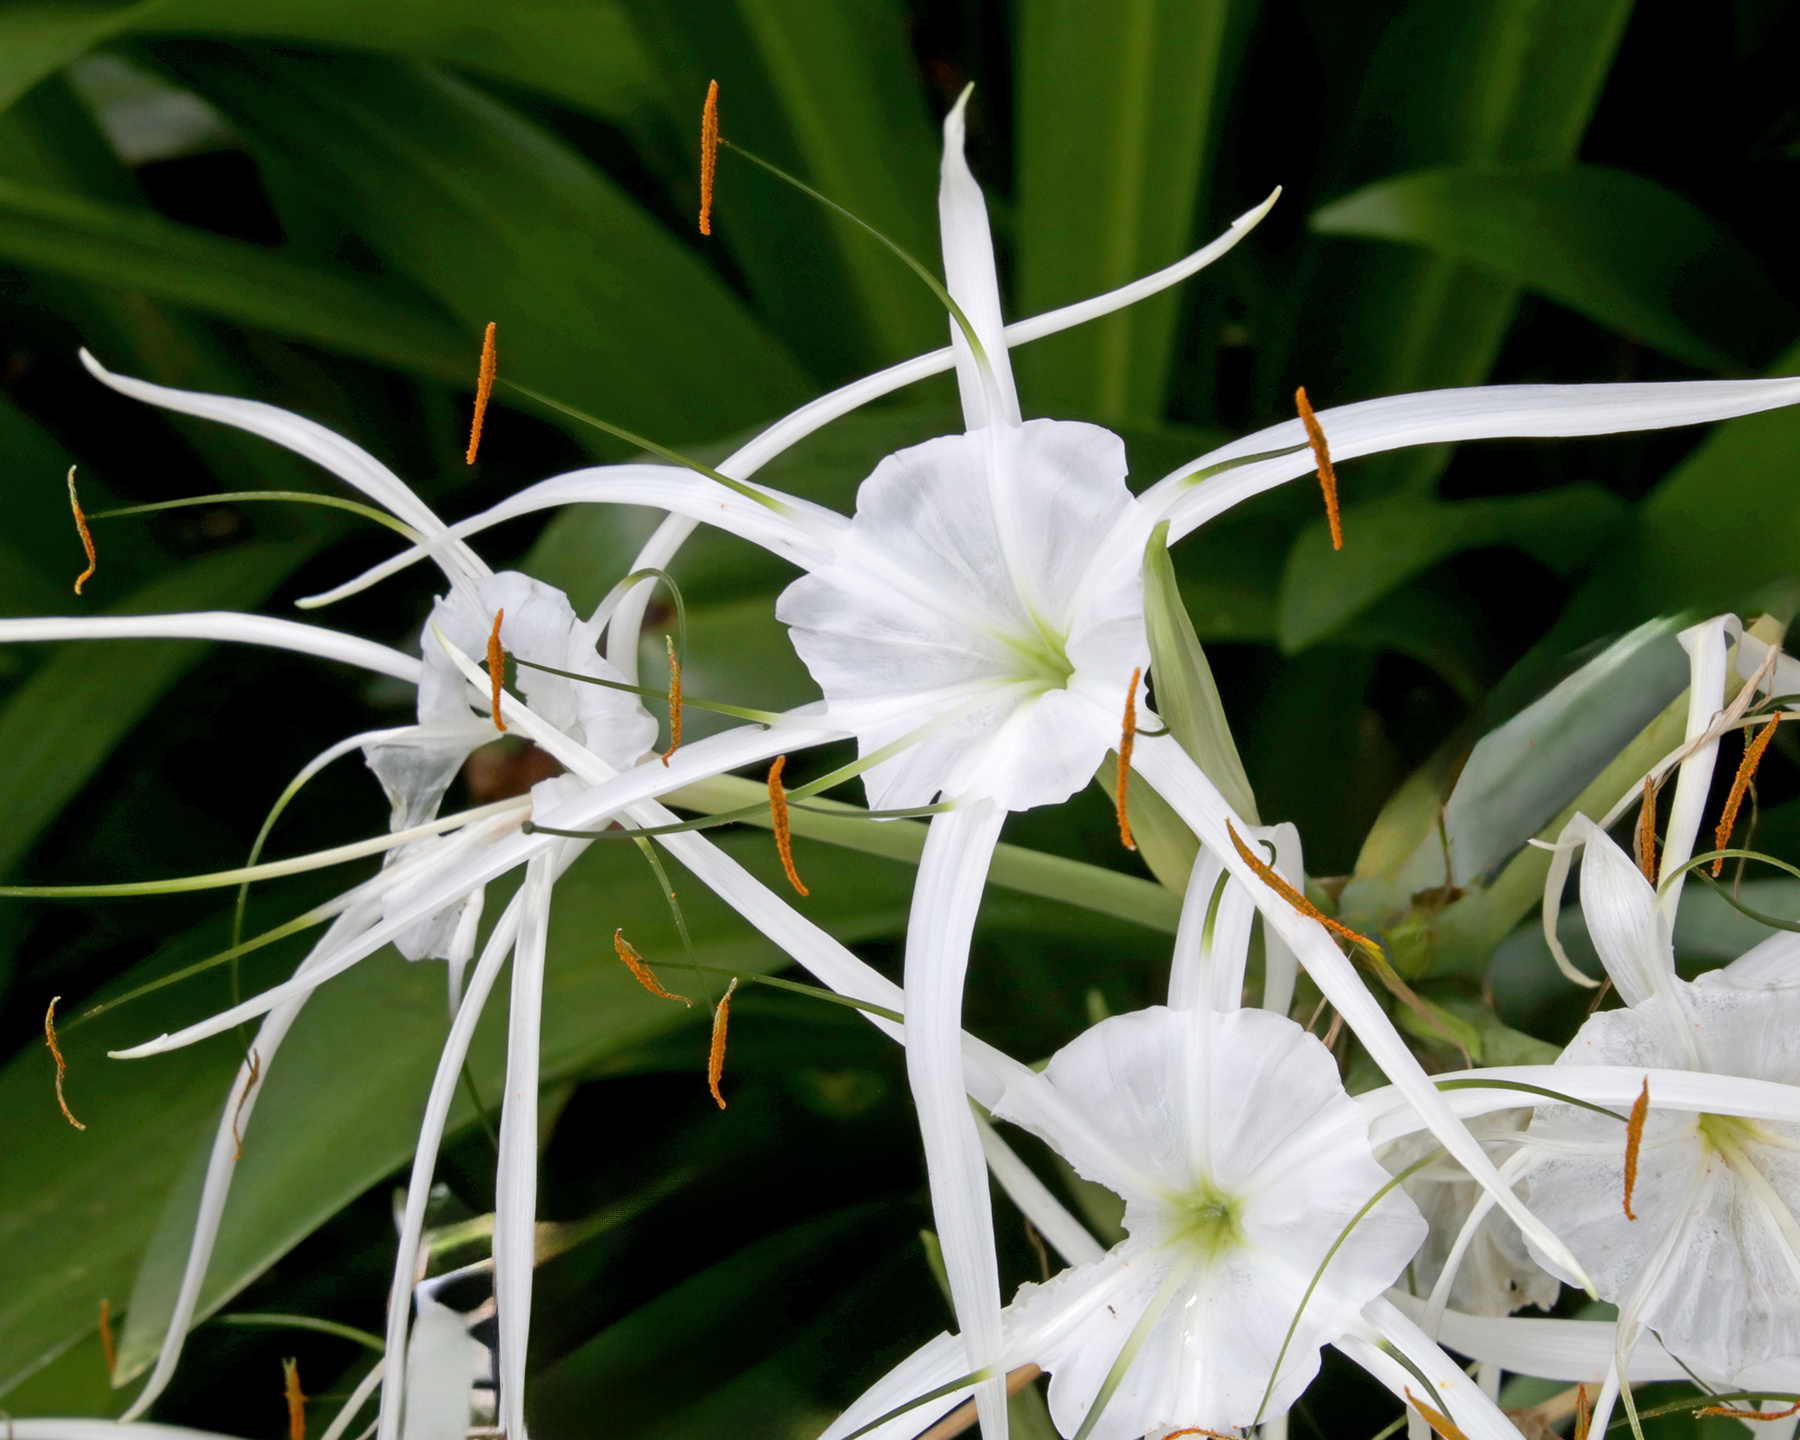 Hymenocallis littoralis, Beach Spider-Lily